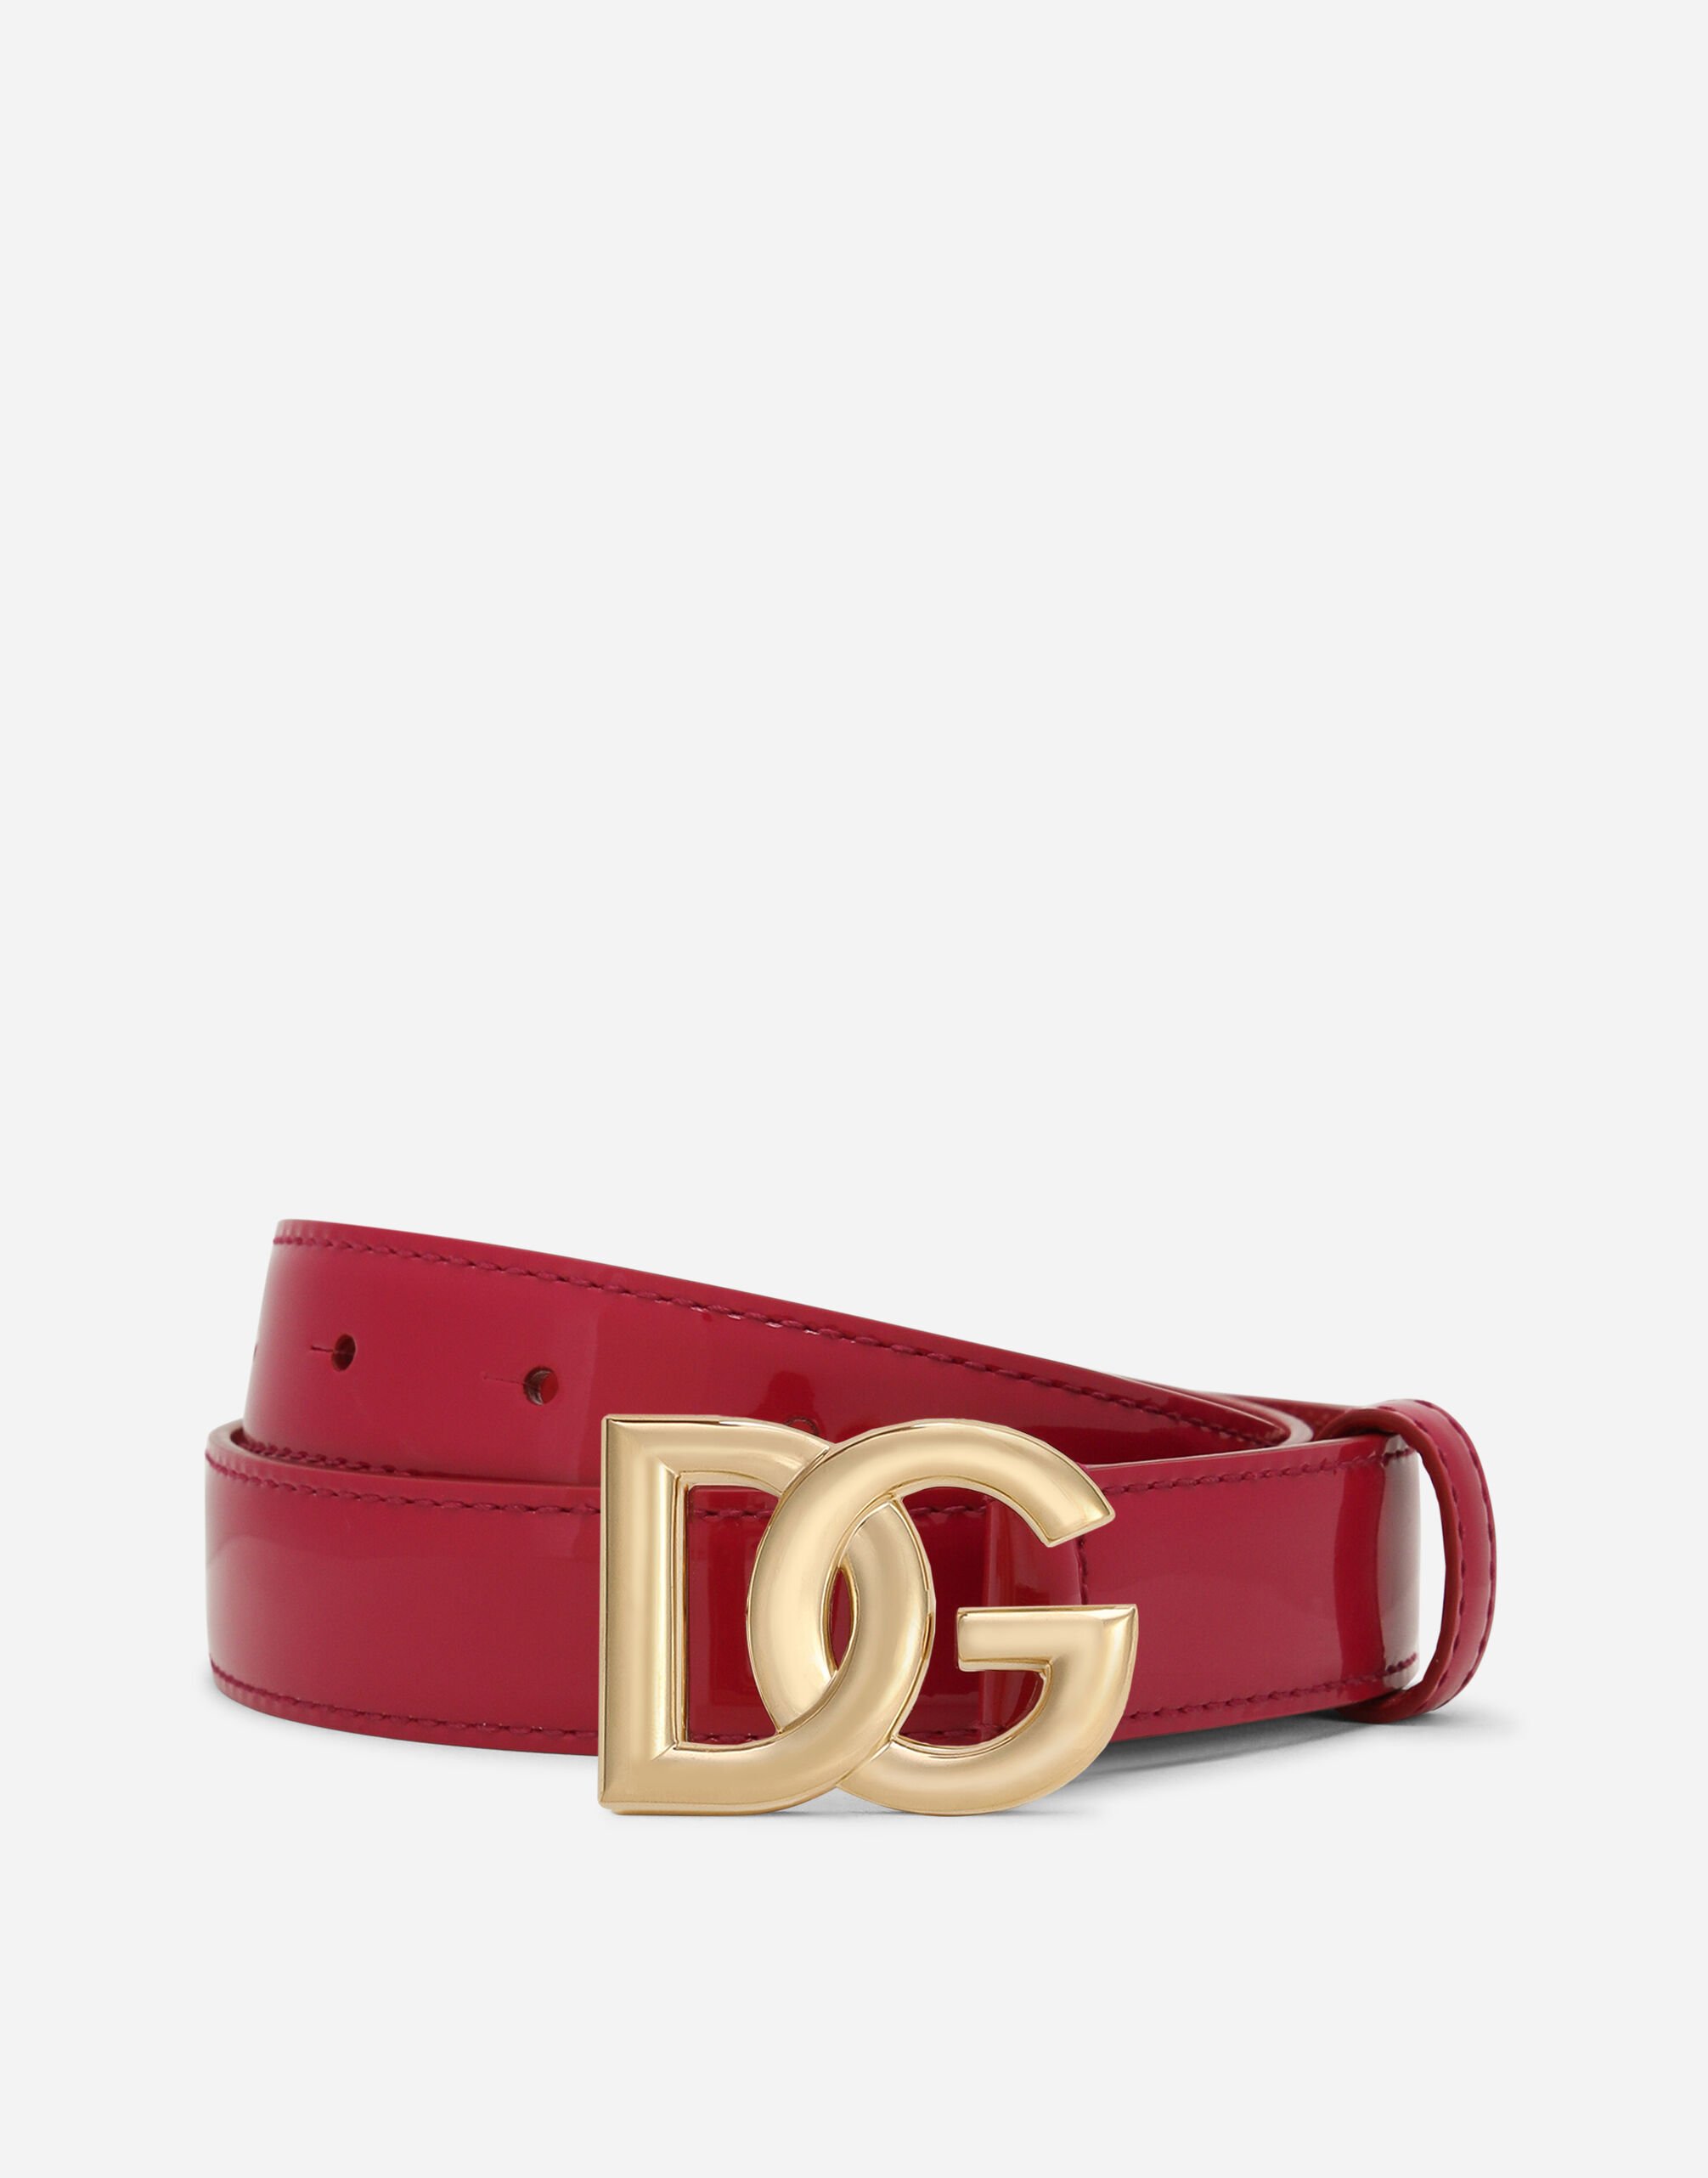 Dolce & Gabbana DG logo belt Red FB311AGDK16